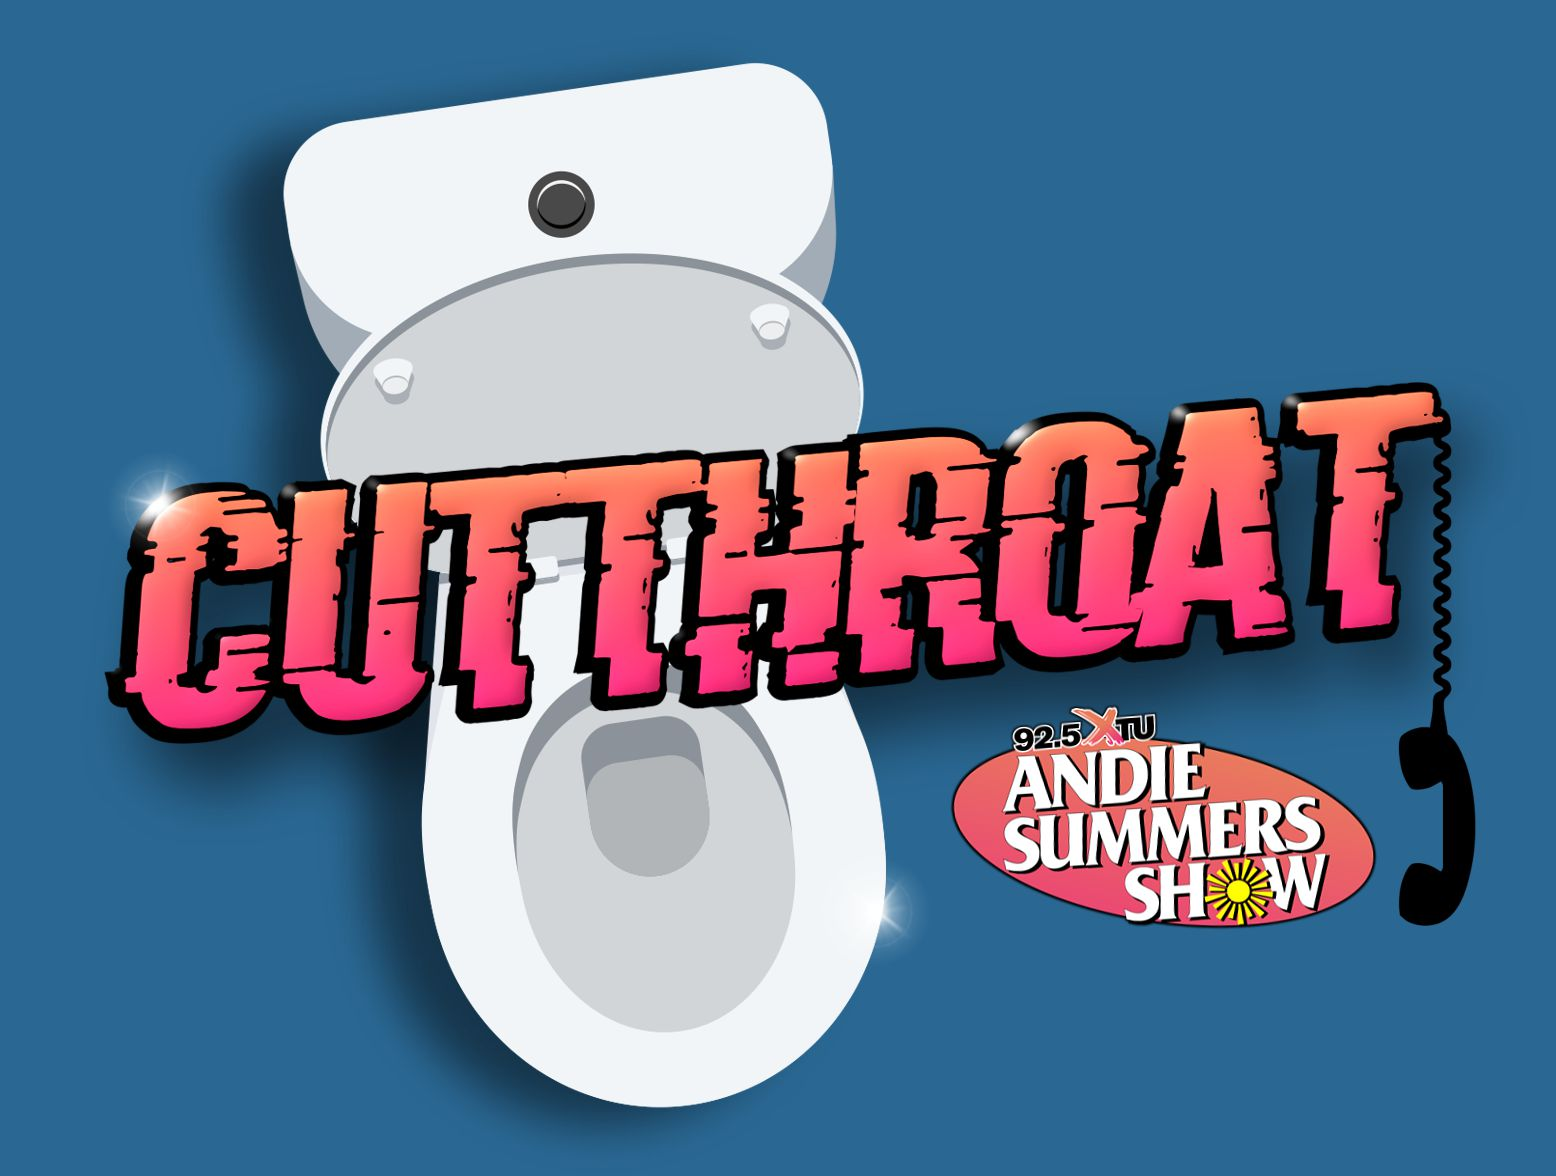 Cutthroat: 7- Eleven Trivia